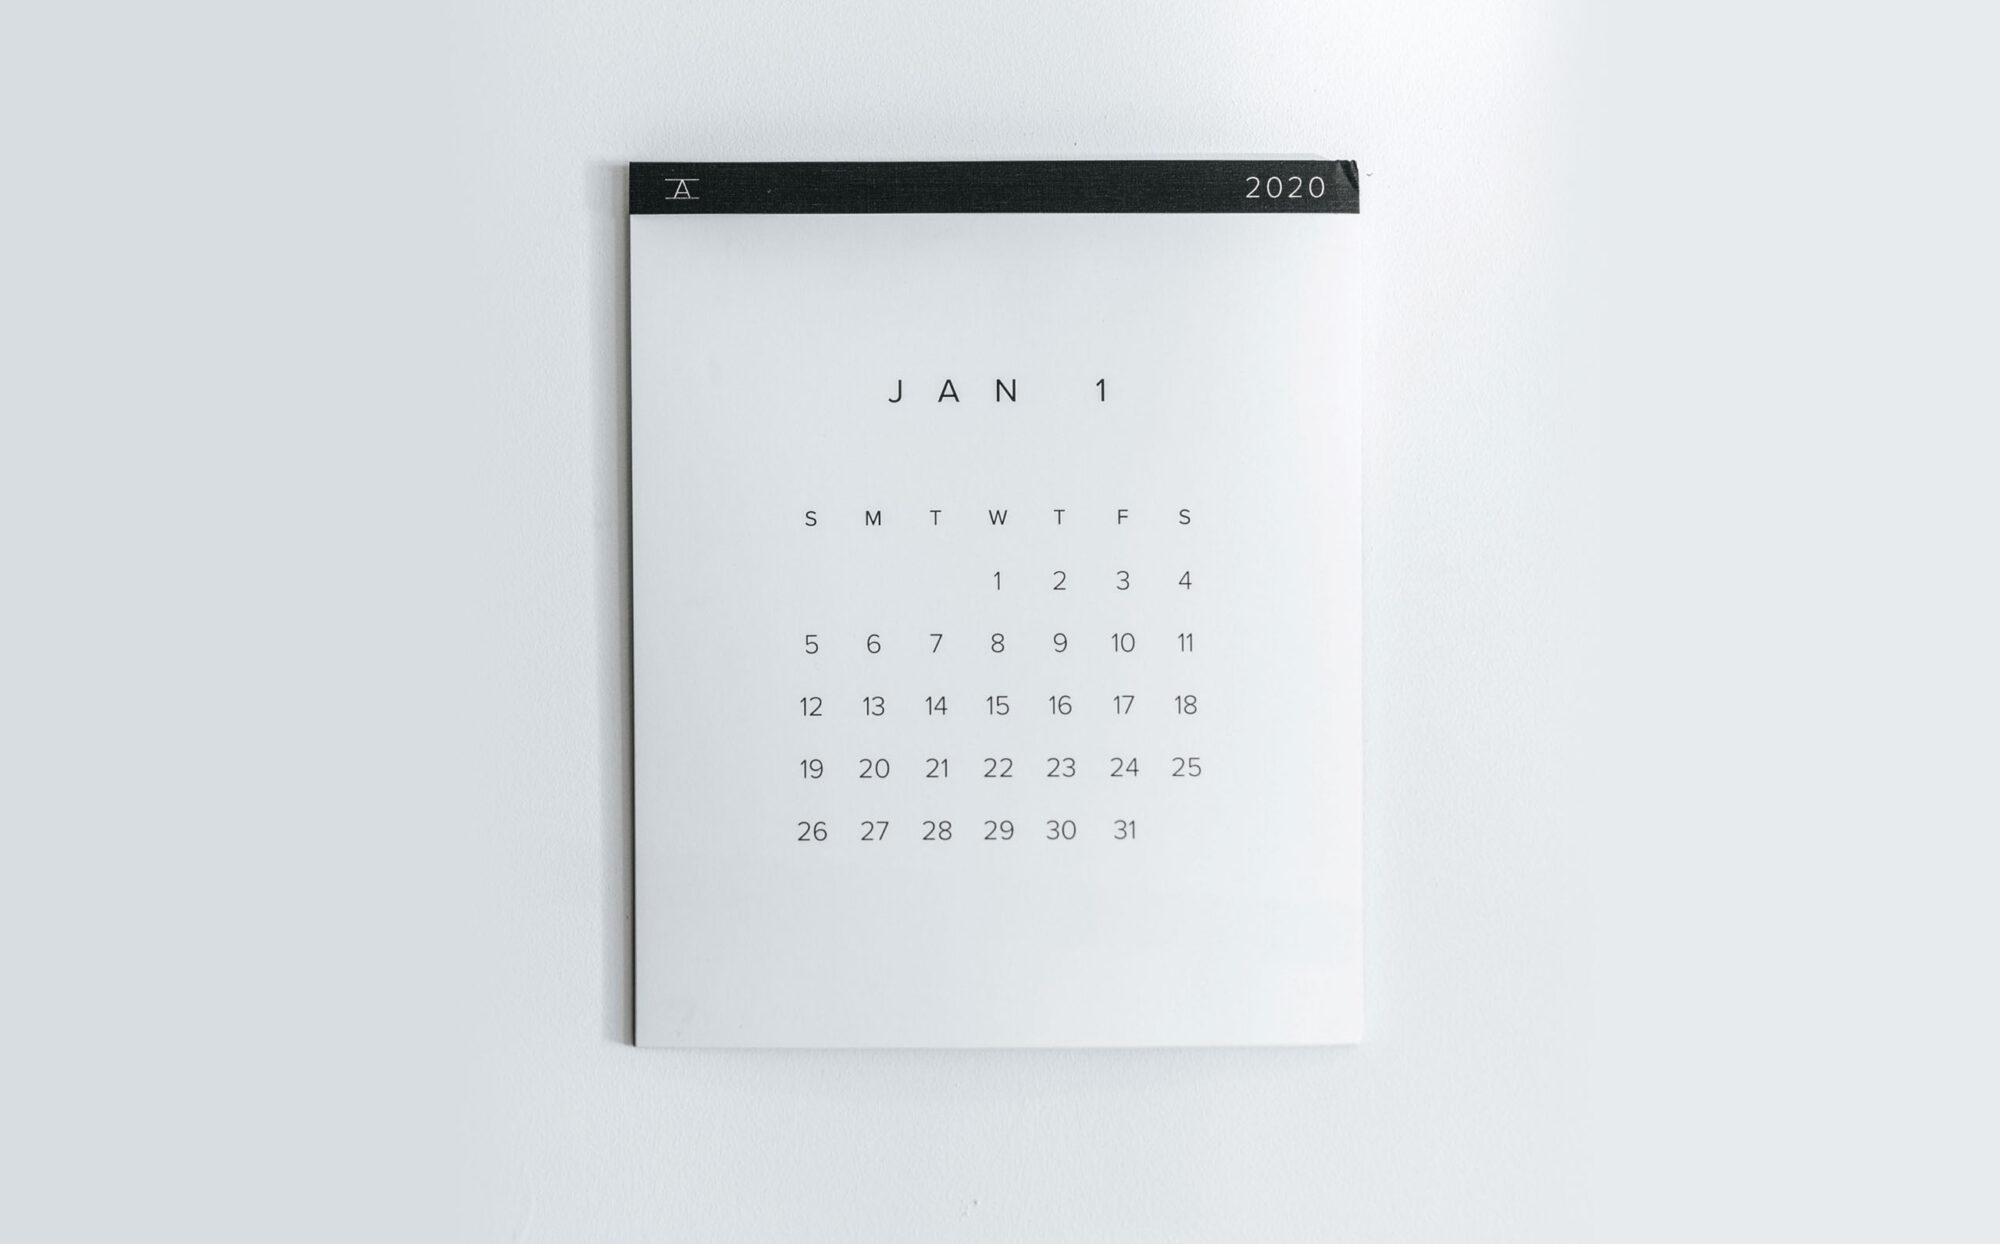 En kalender hänger på en vägg och visar januari månad